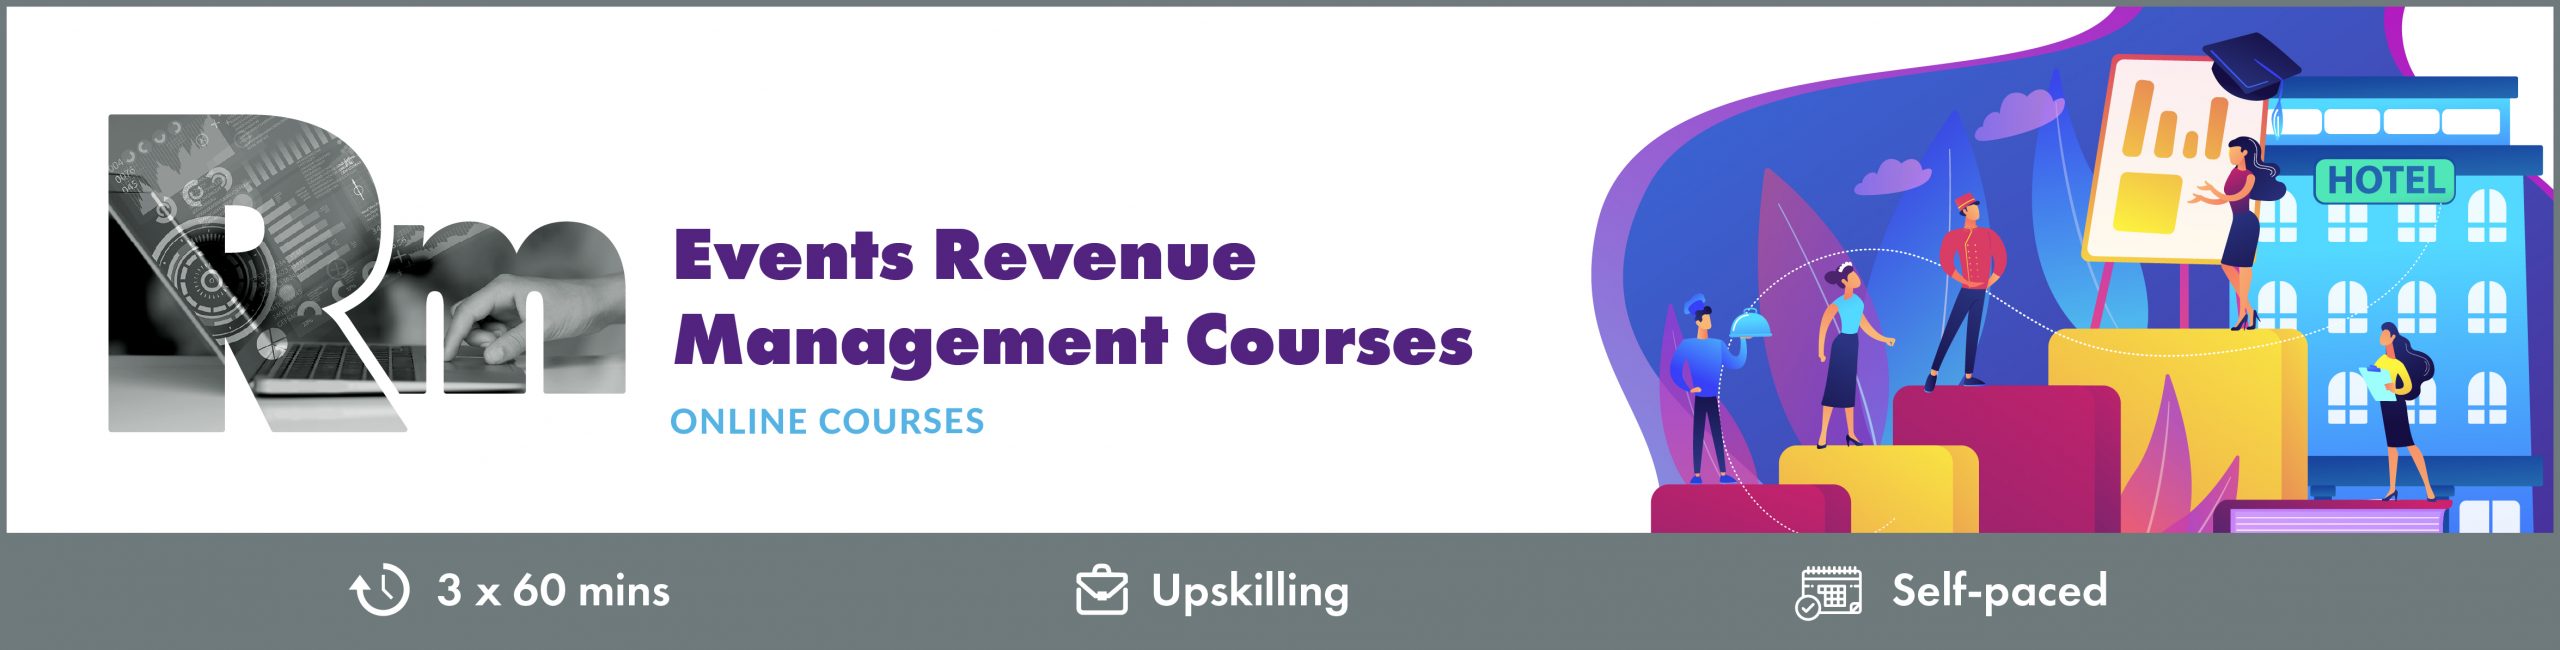 Events Revenue Management Courses